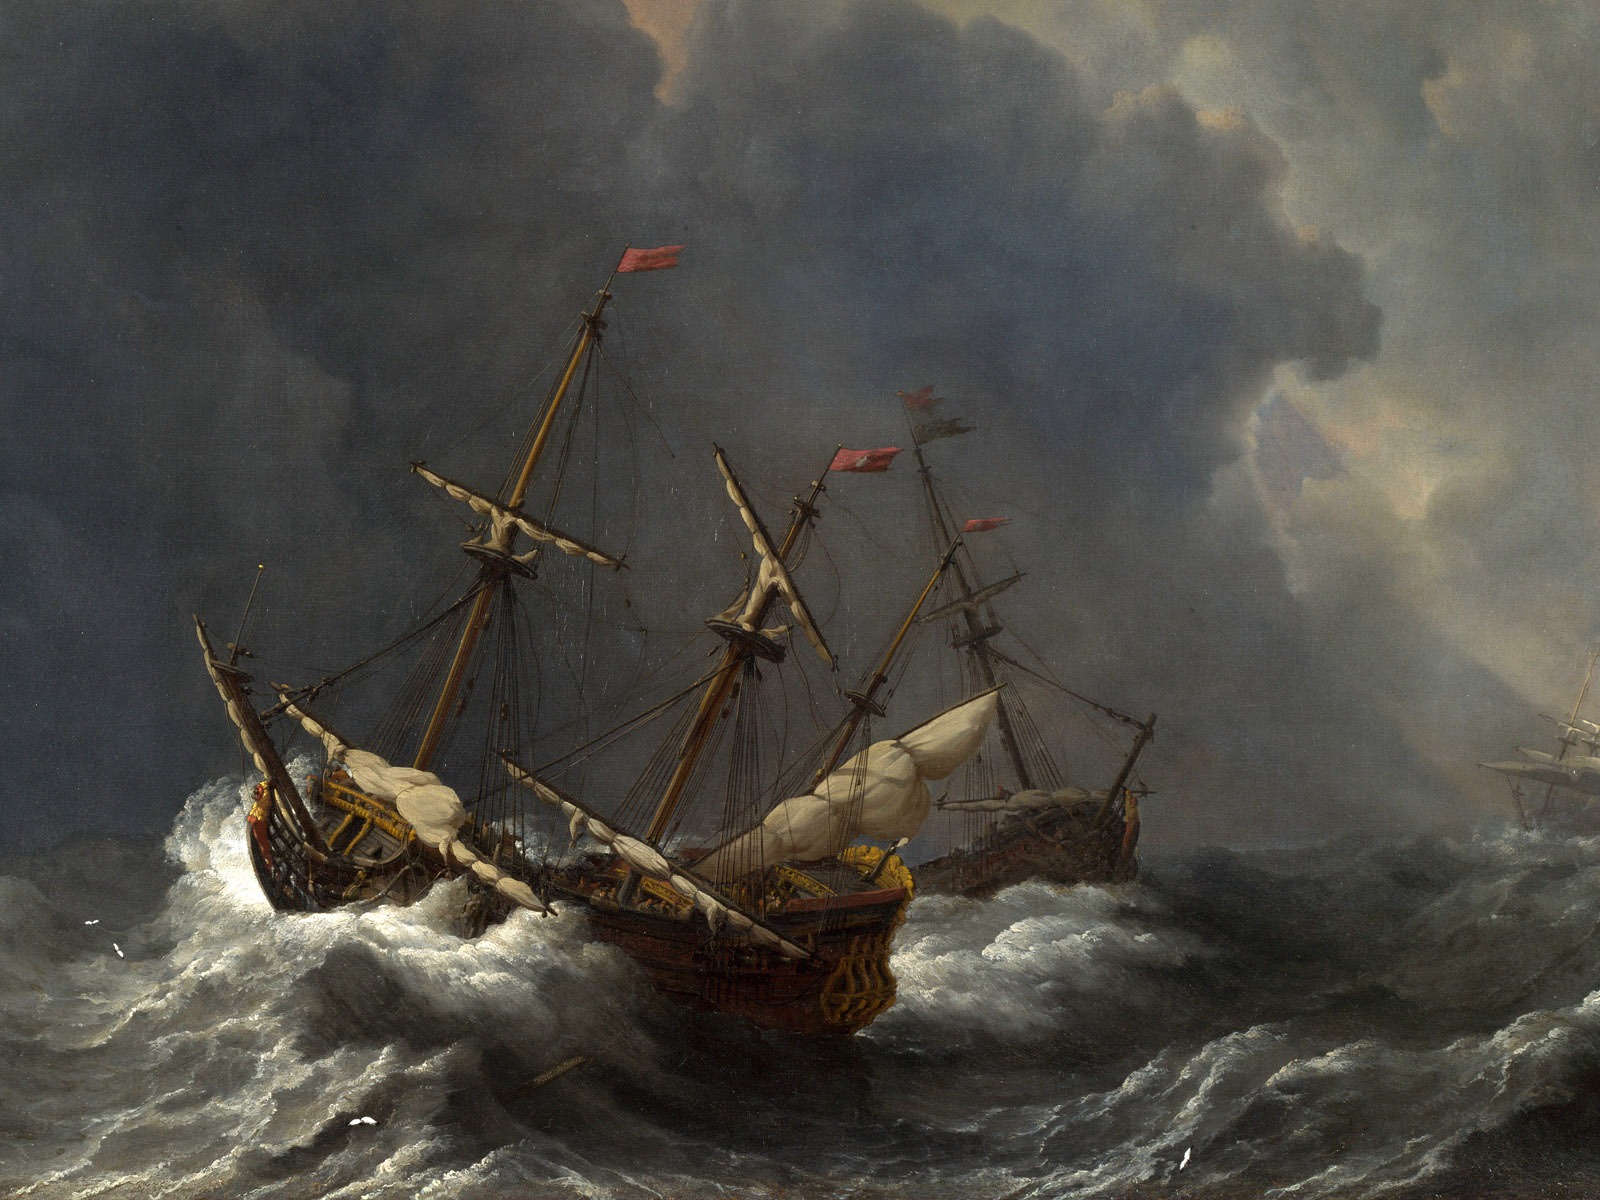 伦敦画廊帆船 壁纸(二)9 - 1600x1200